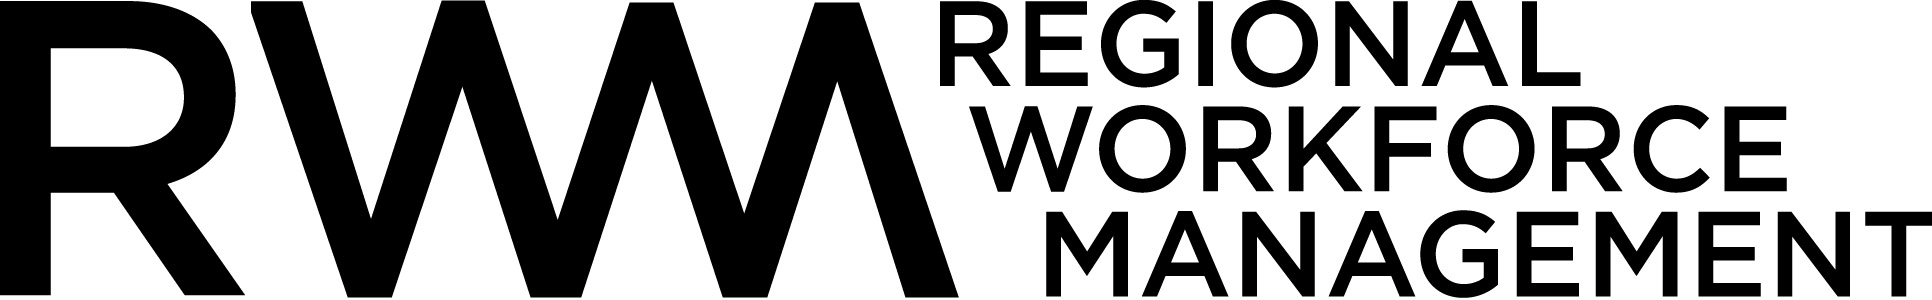 Regional Workforce Management logo